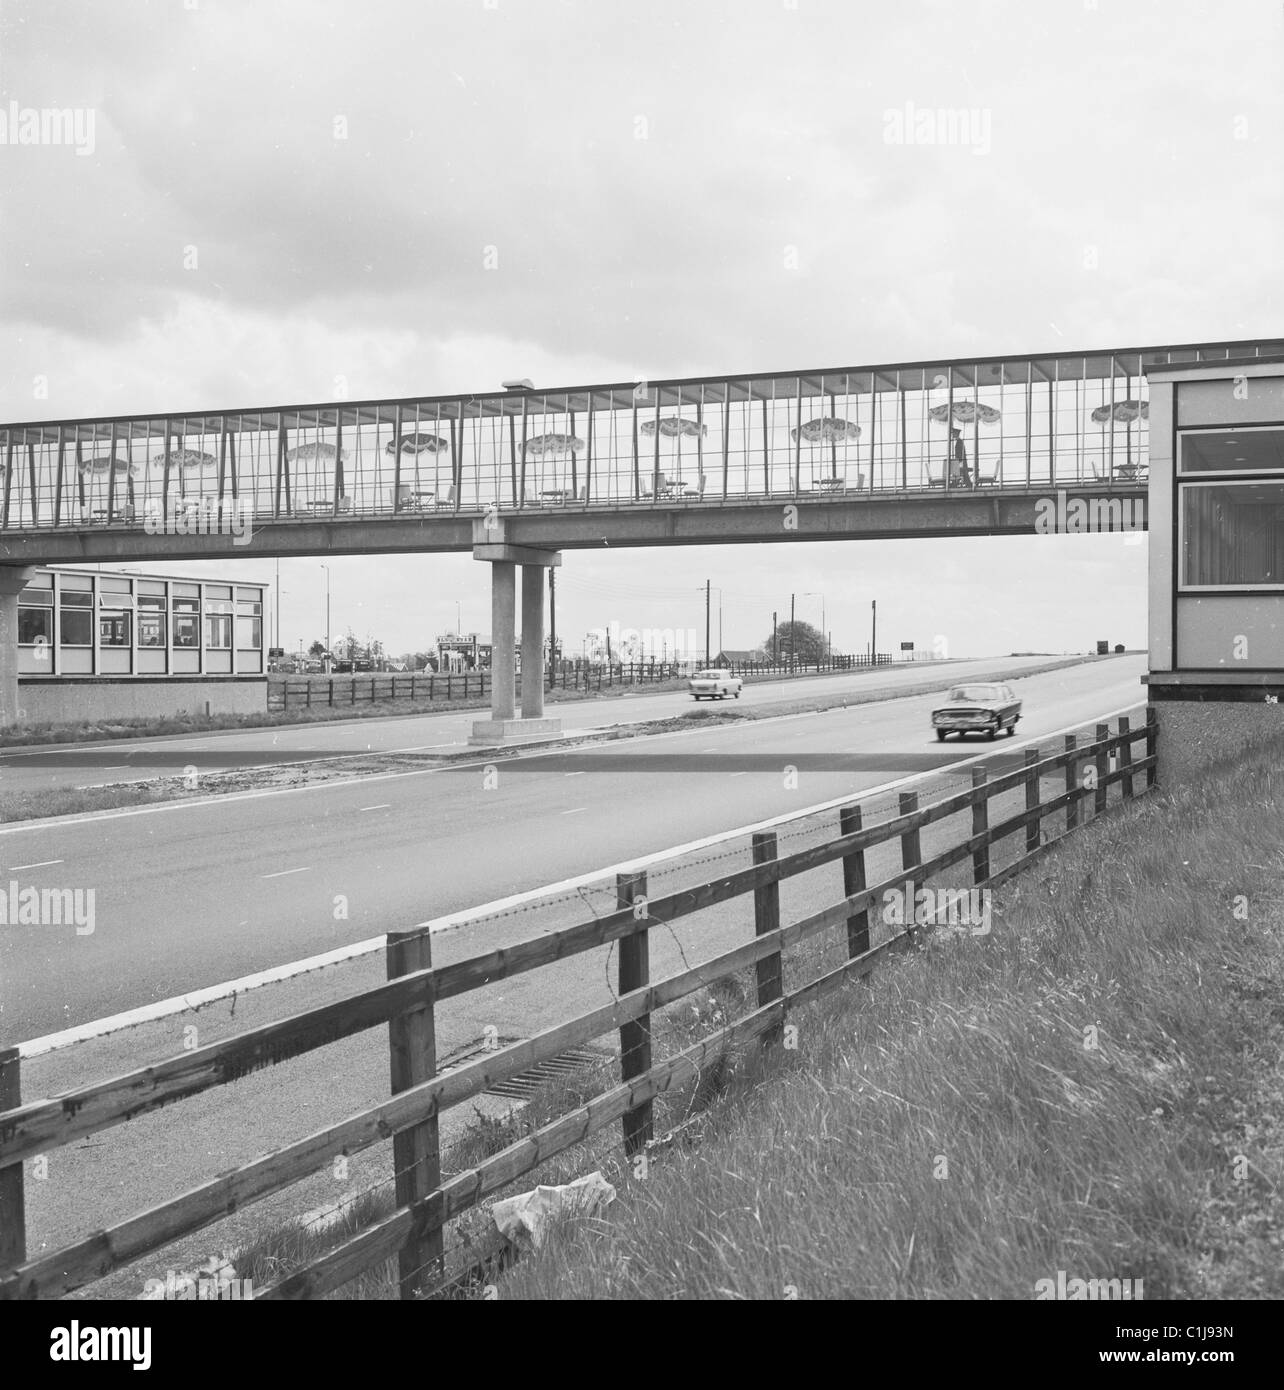 1960, die Kreuzung oder Fußgängerbrücke an einer neuen Fortes Service Station und Autofahrer Raststätte an der Autobahn M1 in Newport Pagnell, England, Großbritannien Stockfoto